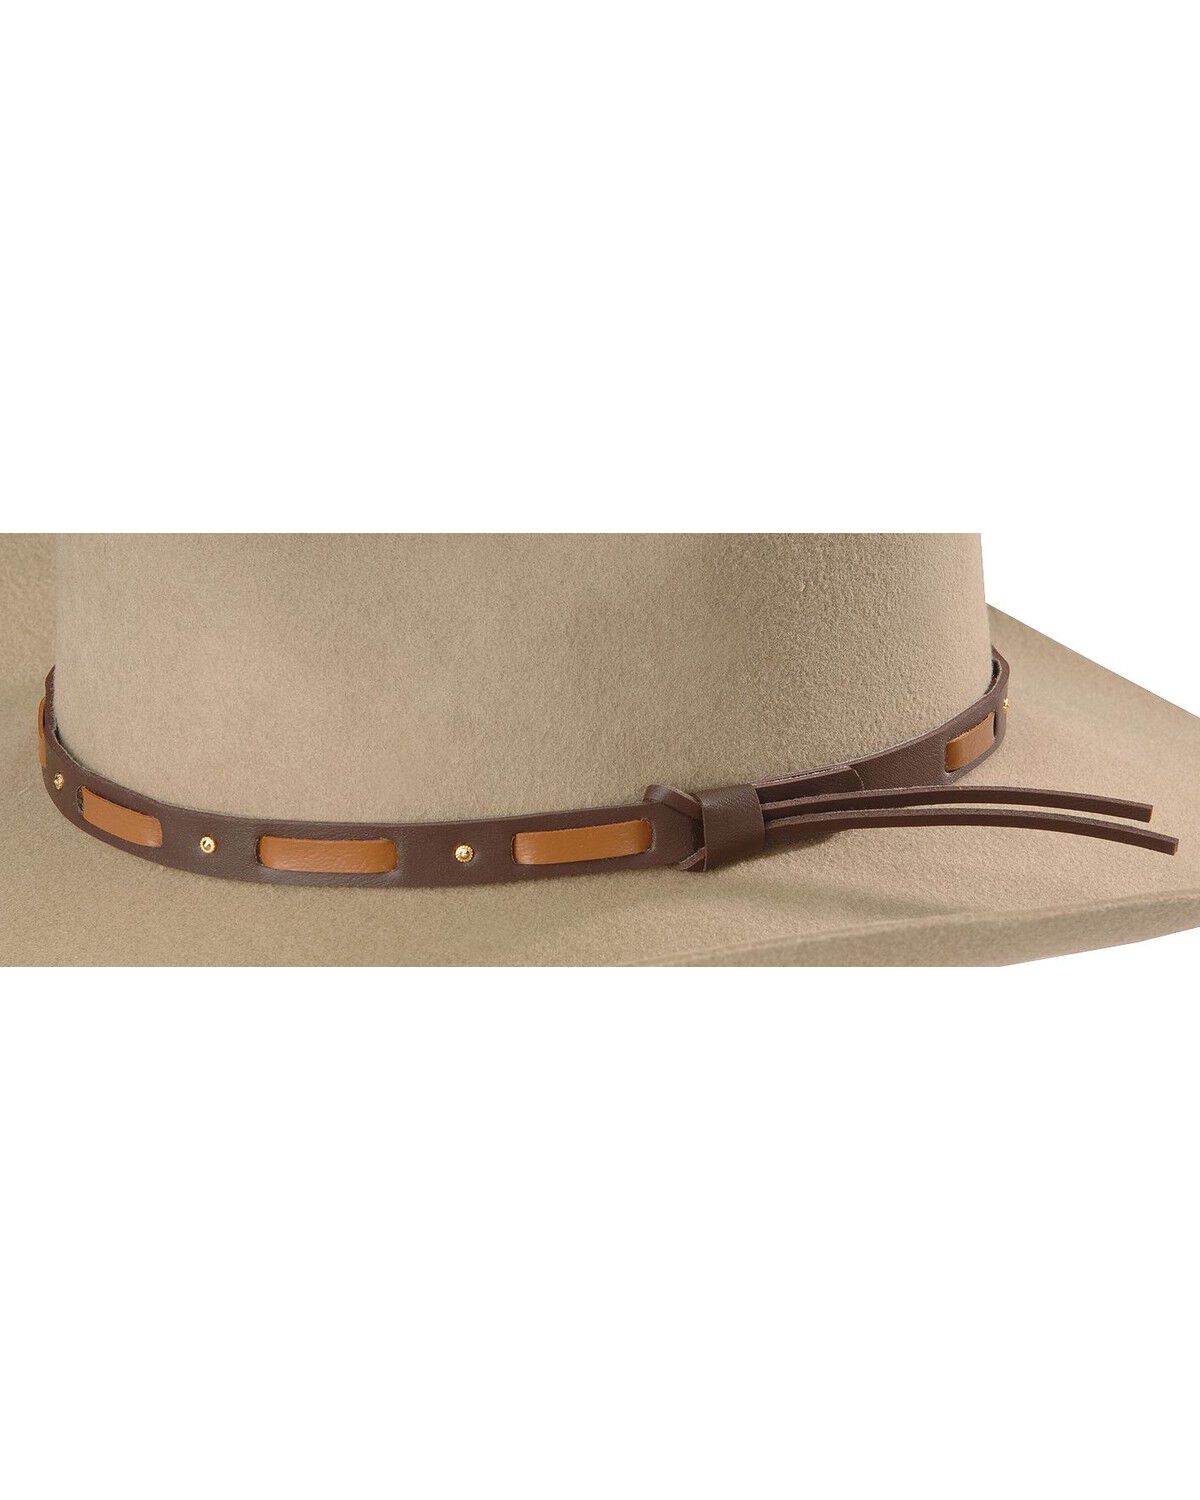 TWBOWI-0241 Stetson Women's Bowie Wool Felt Western Hat 